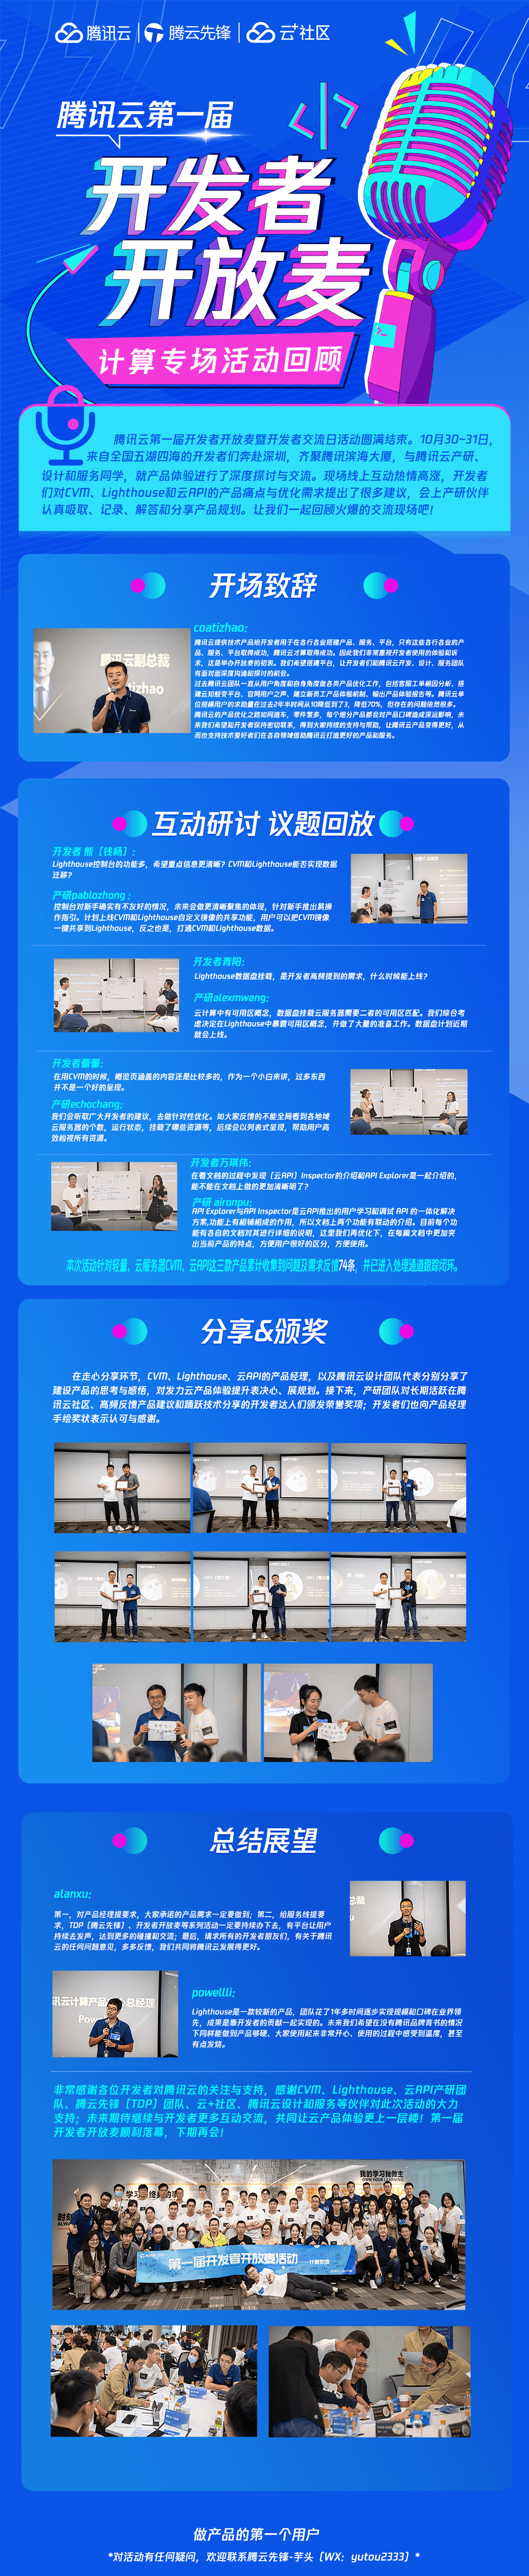 腾讯云第一届开发者开放麦大会